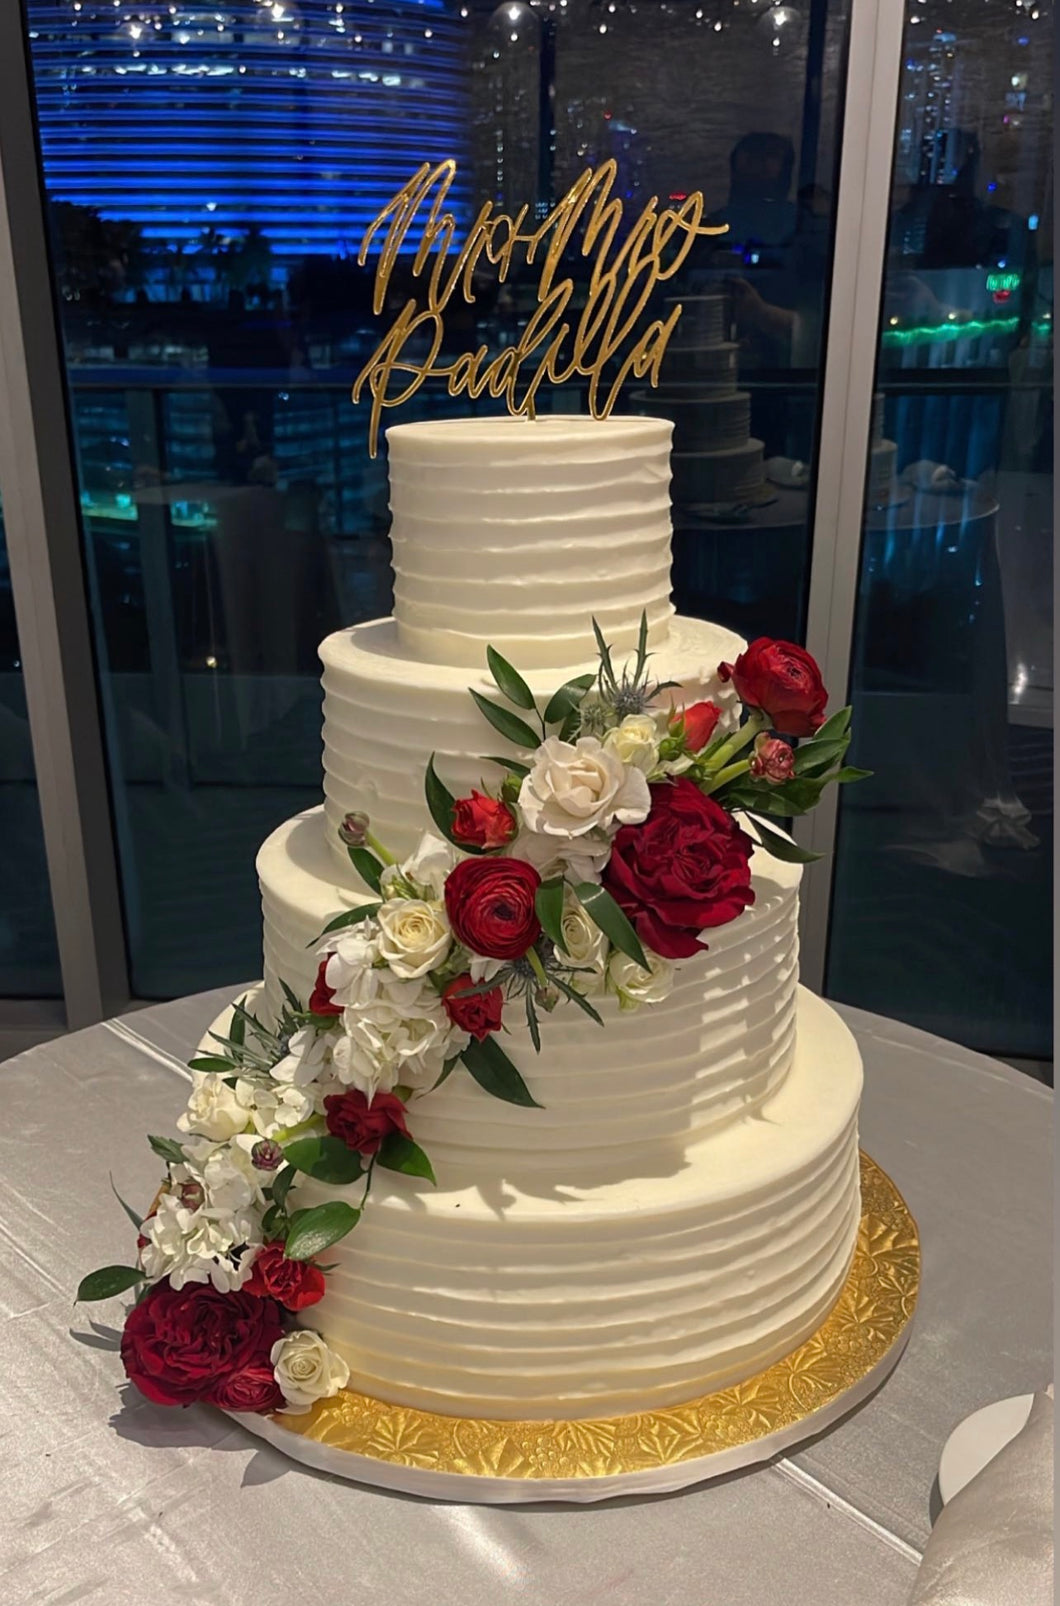 MR. & MRS. | CUSTOM WEDDING CAKE TOPPER